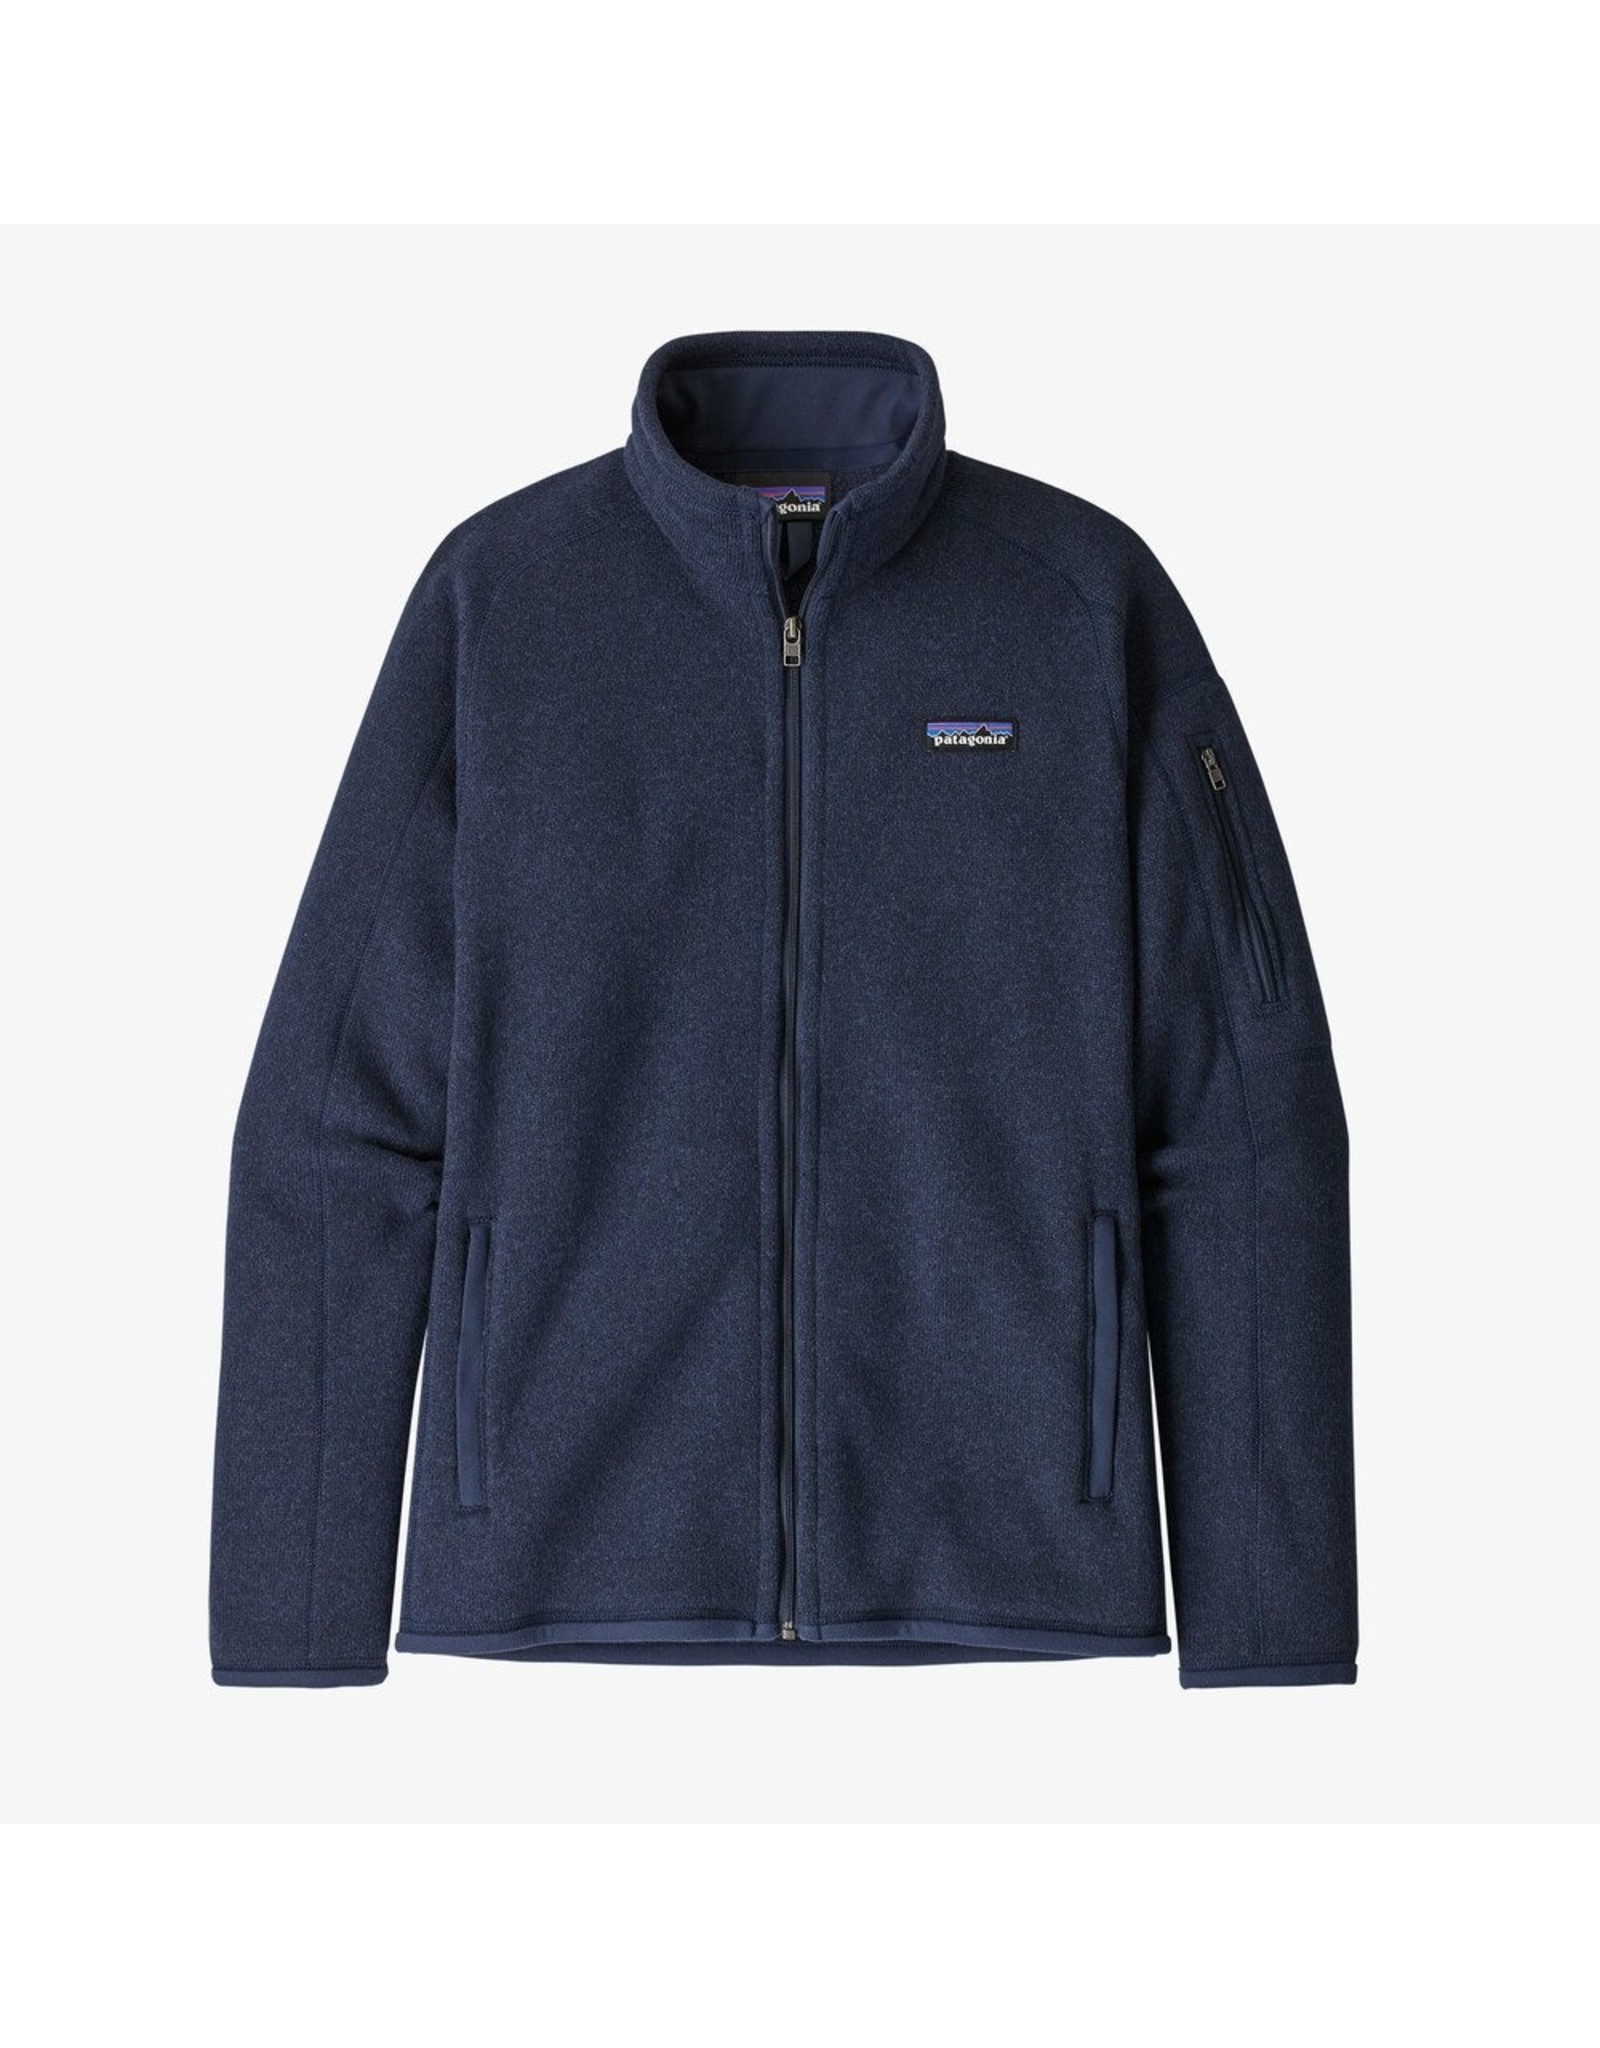 Patagonia Patagonia - W’s Better Sweater Jacket